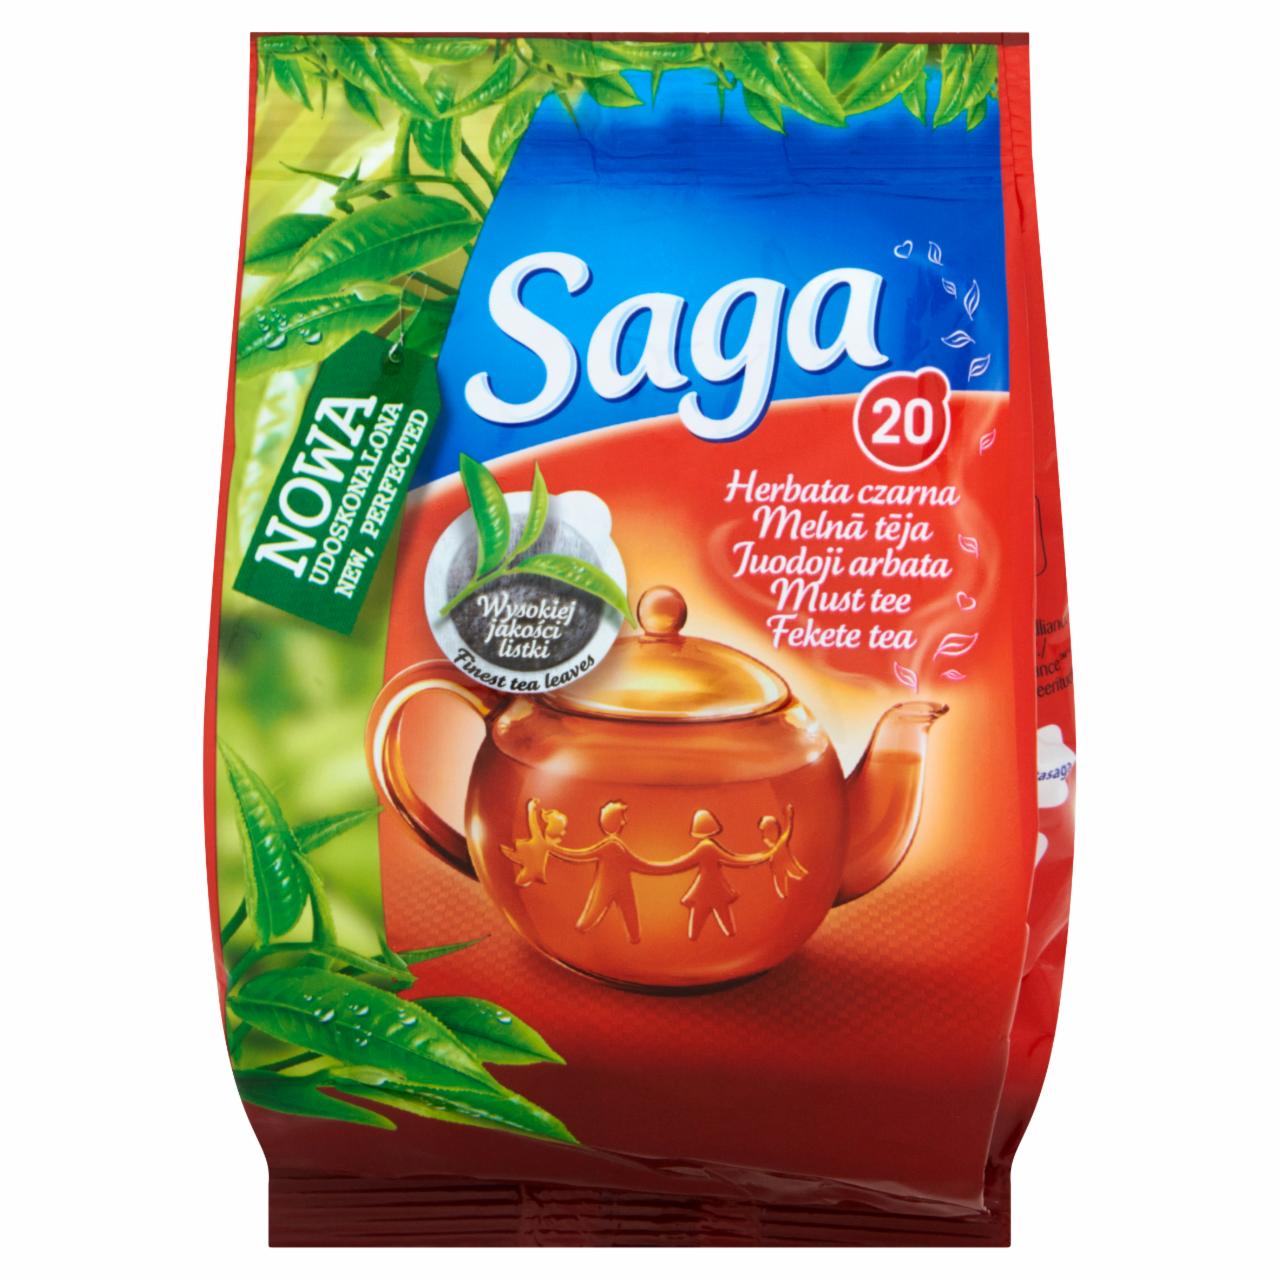 Zdjęcia - Saga Herbata czarna 24 g (20 torebek)